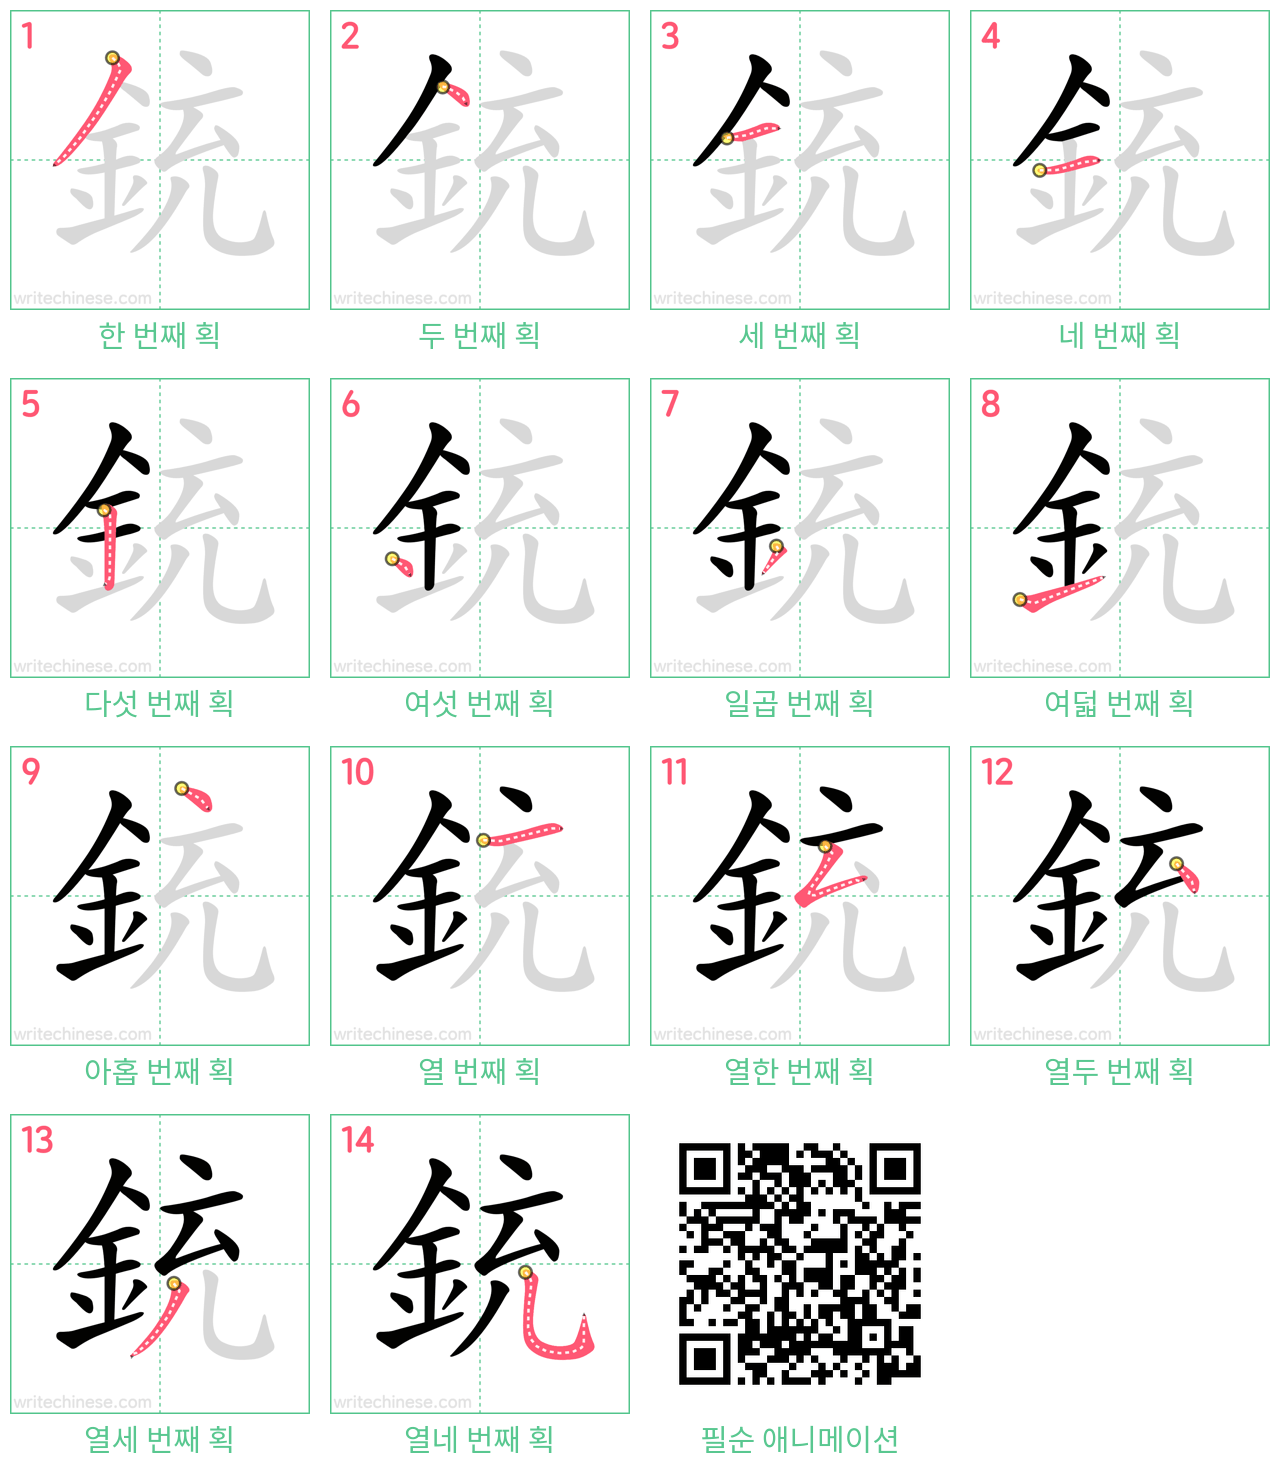 銃 step-by-step stroke order diagrams